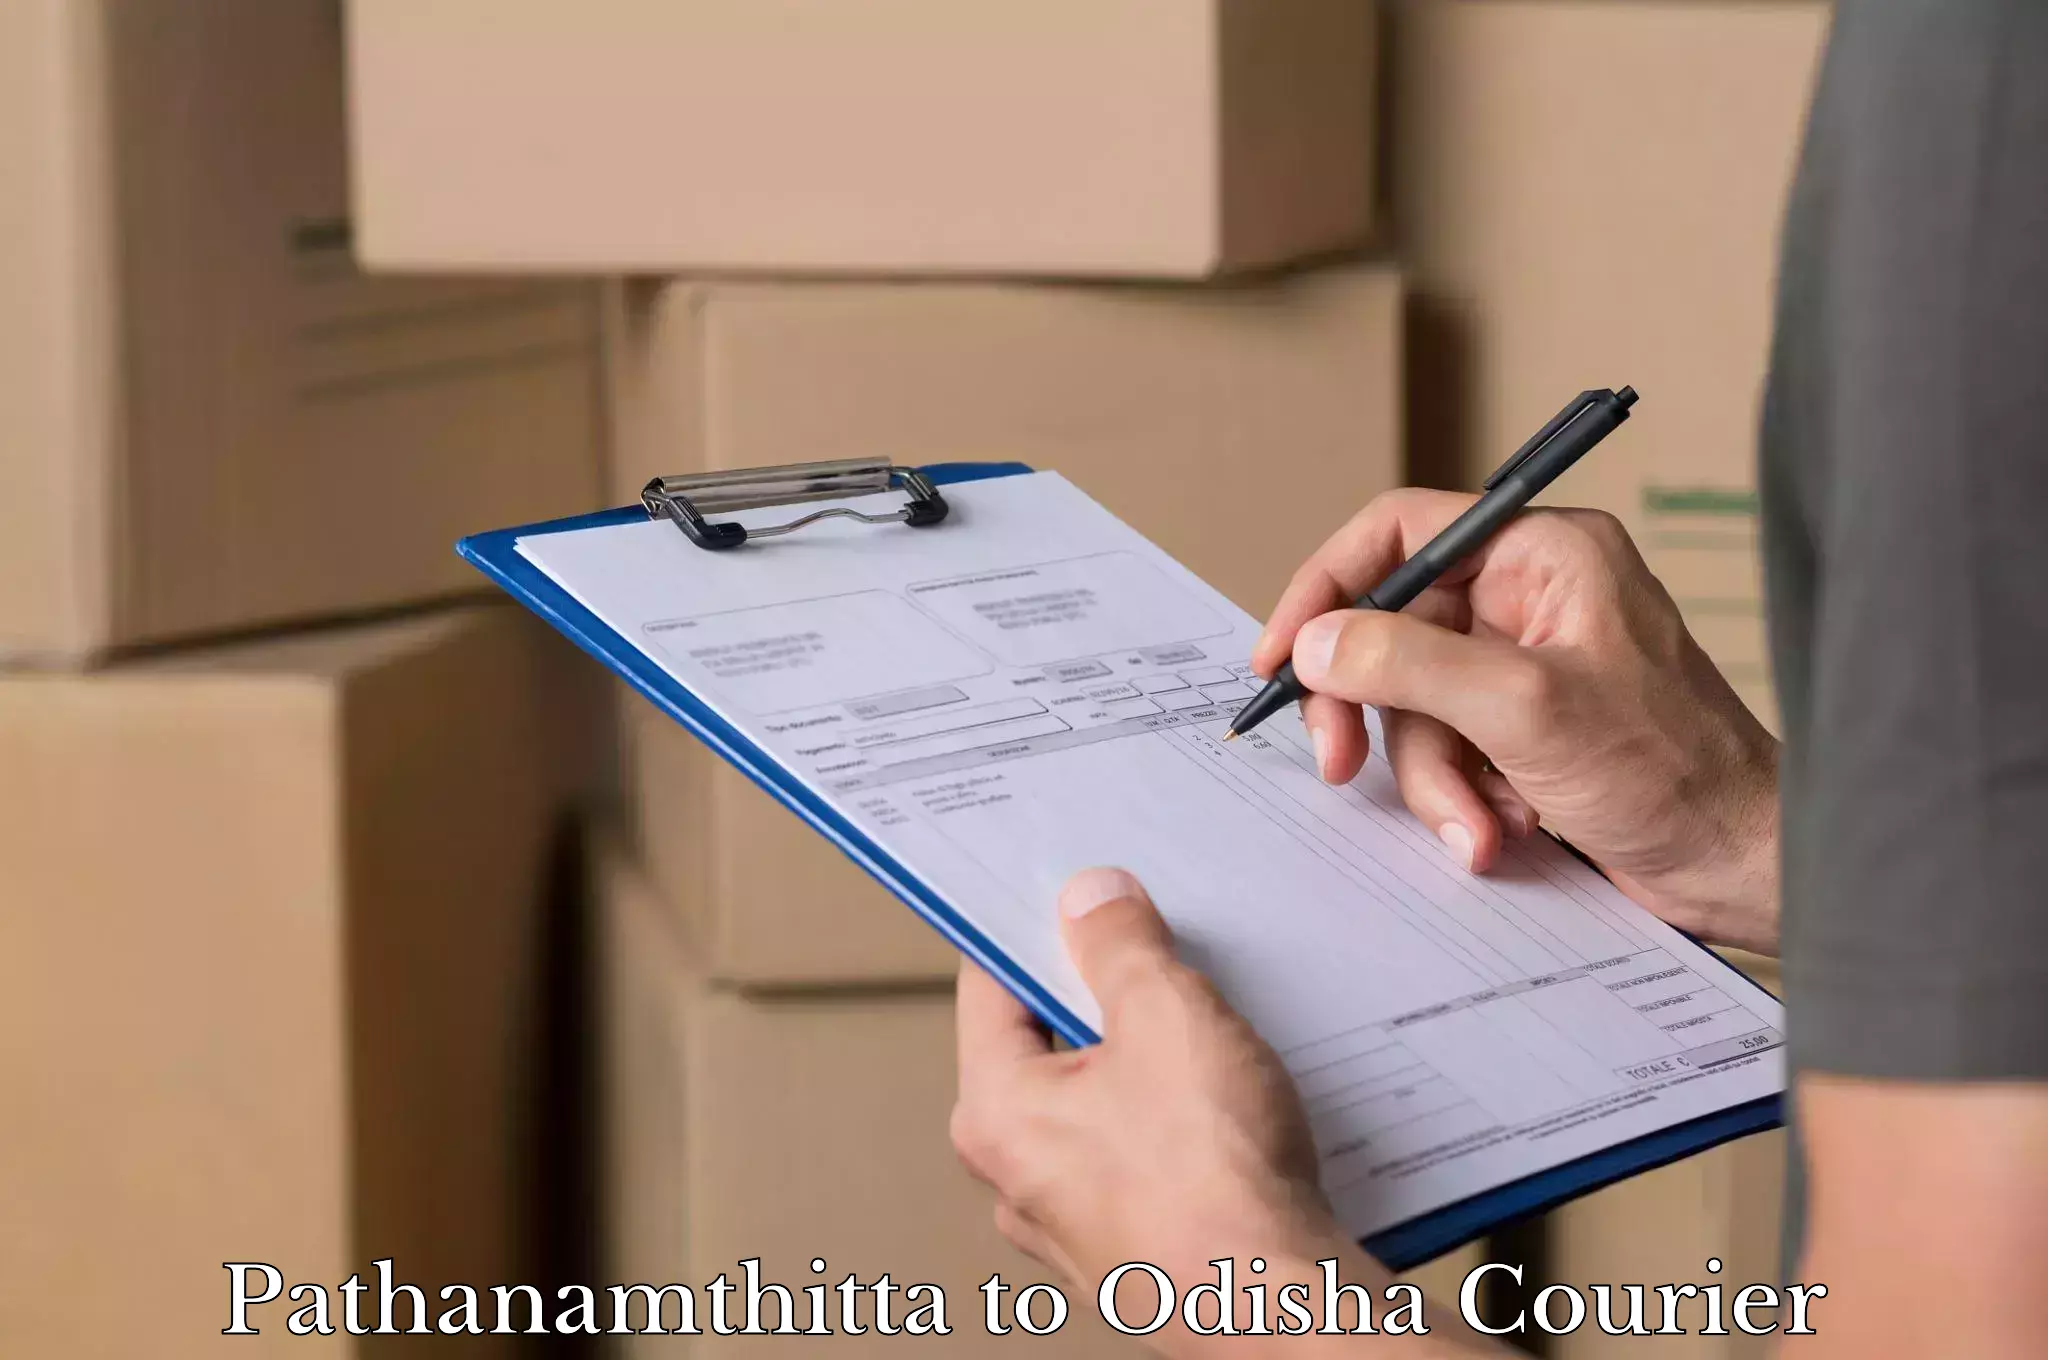 Luggage shipment tracking in Pathanamthitta to Odisha